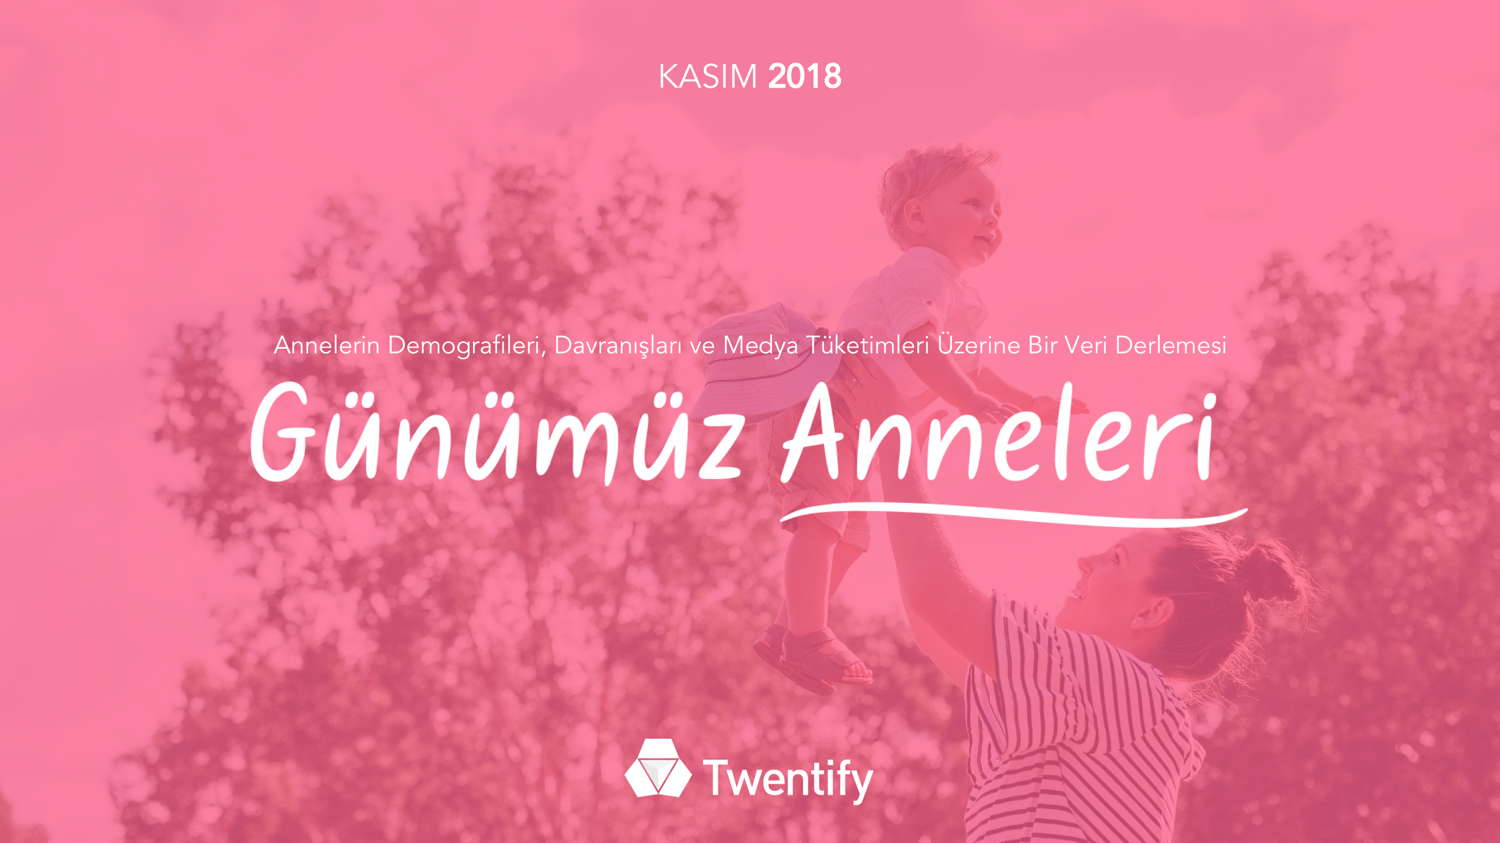 gunumuz_anneleri_cover